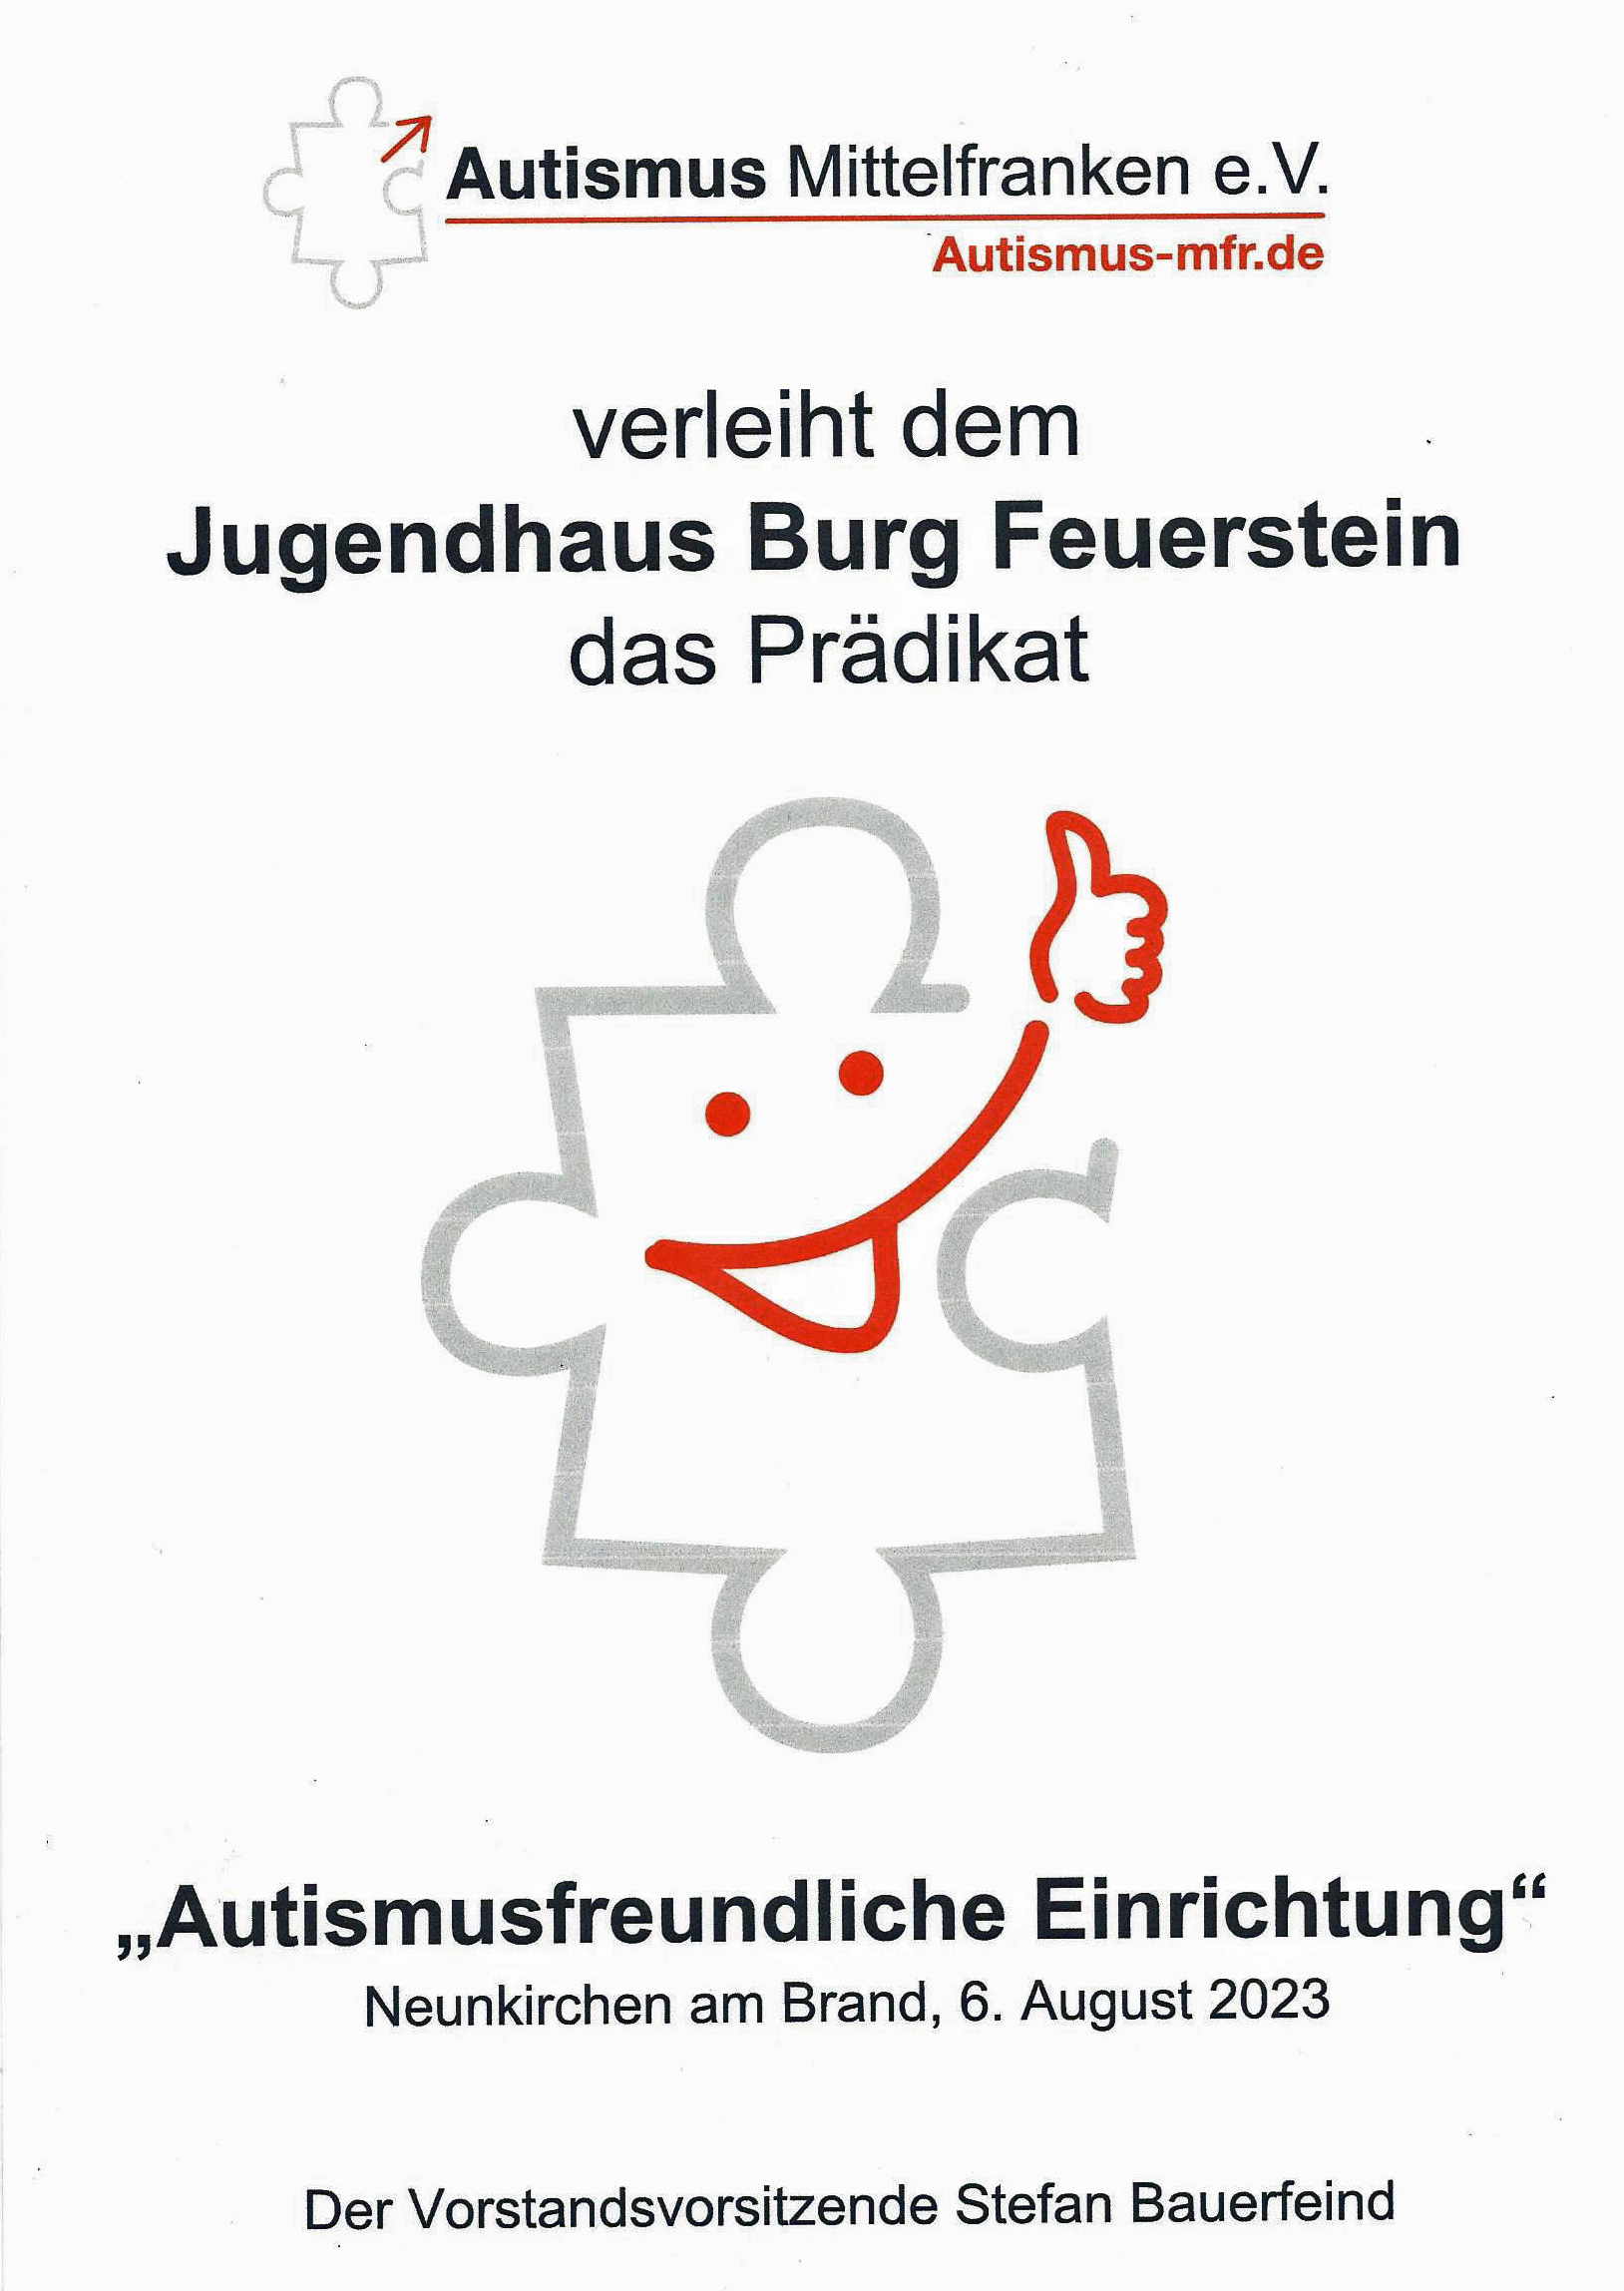 Auszeichung Autismusfreundliche Einrichtung